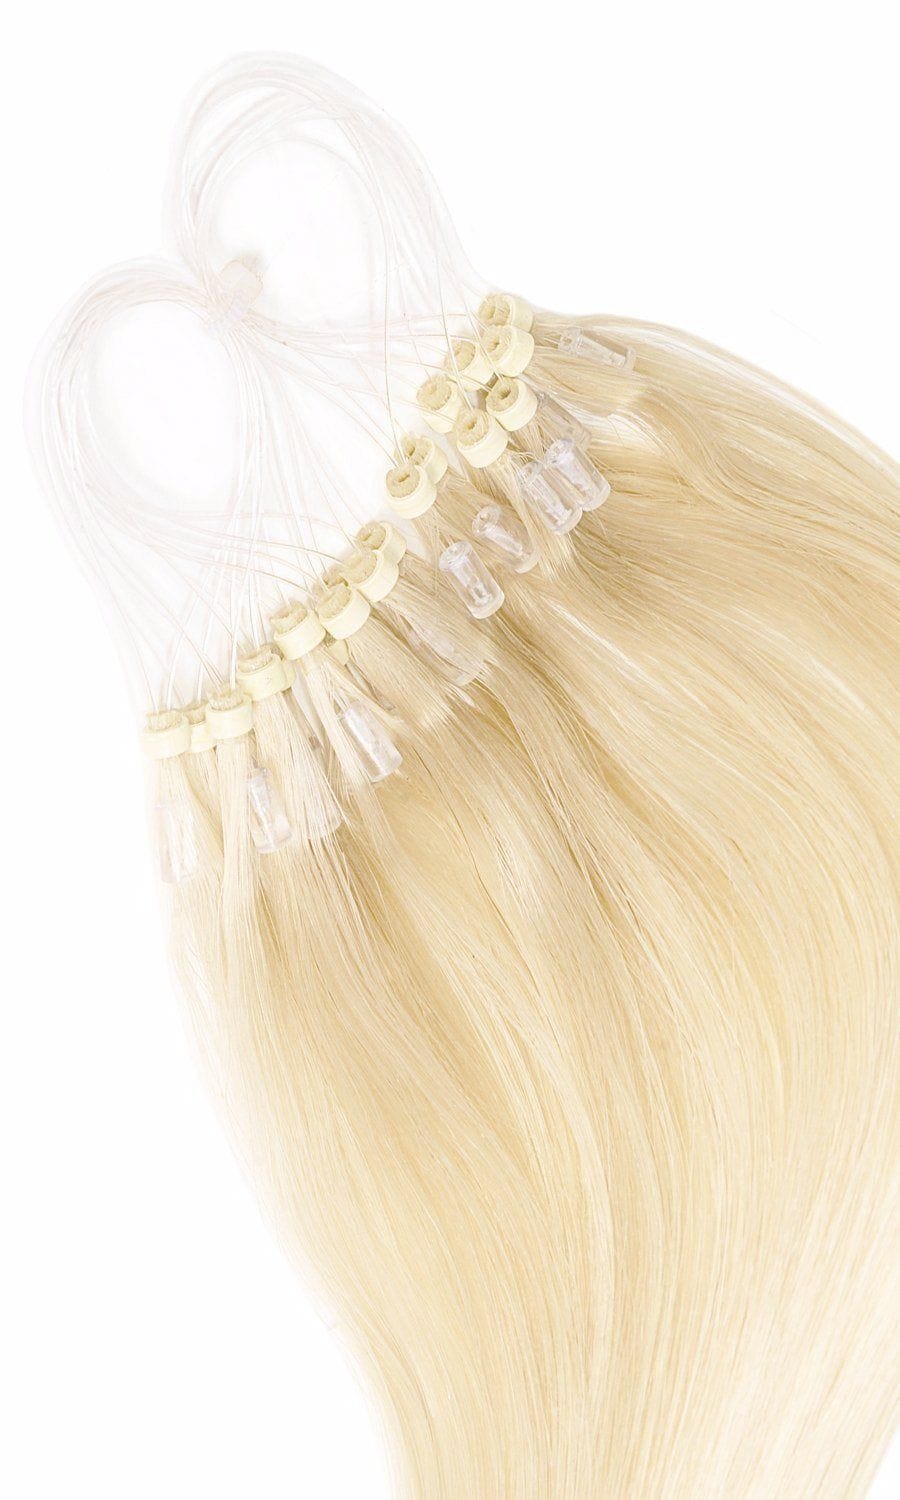 Goldblond Microring Hair Extensions - 100% Echthaar